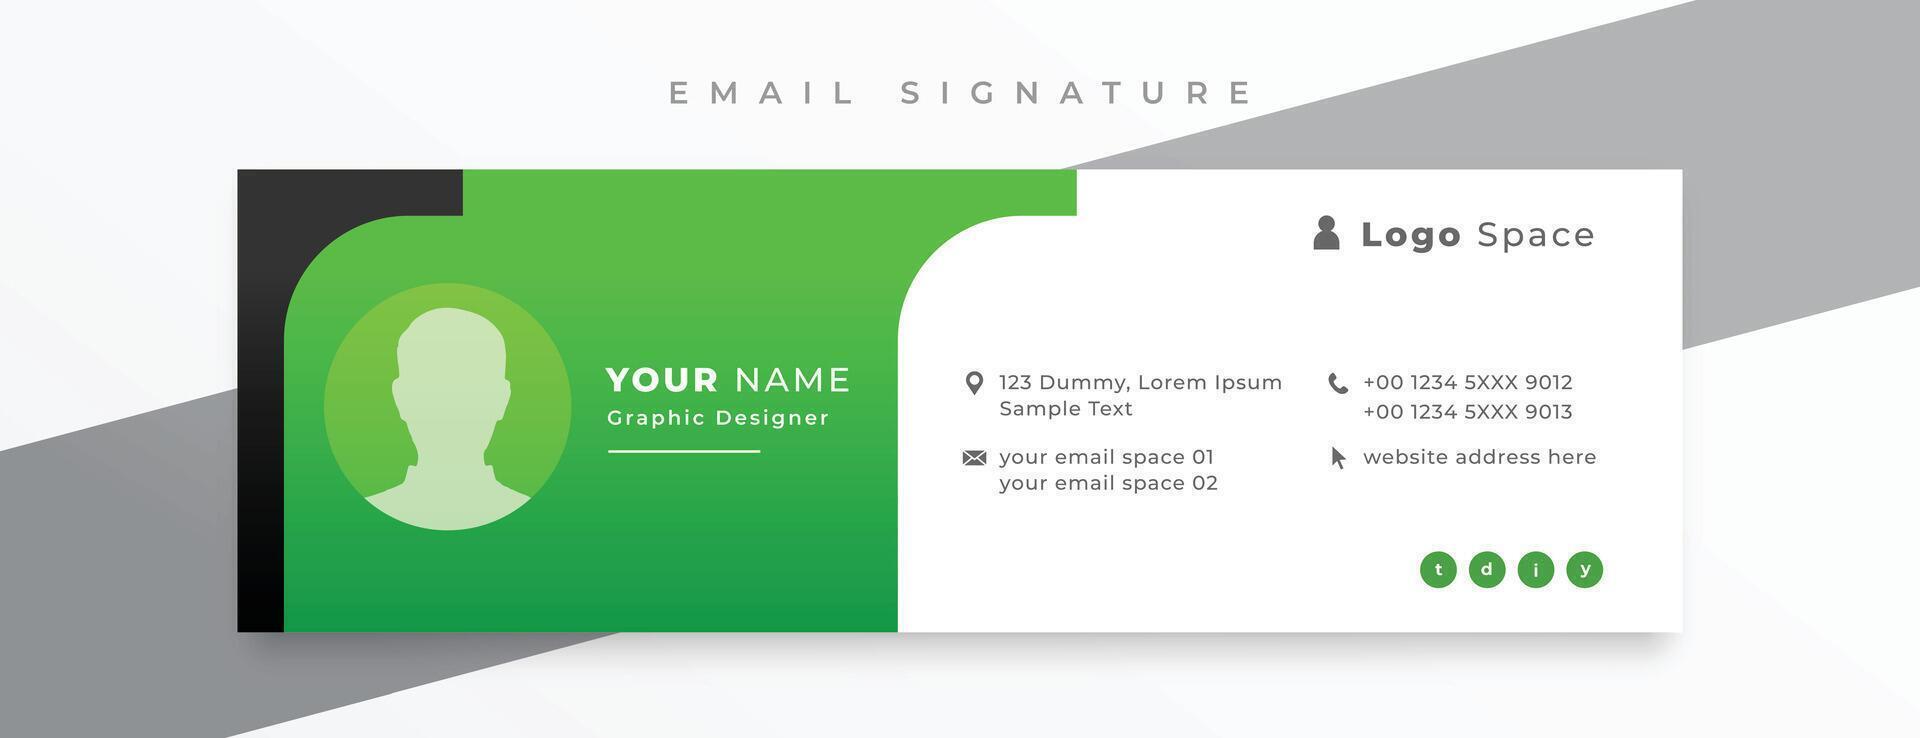 élégant email Signature carte modèle pour affaires promotionnel vecteur